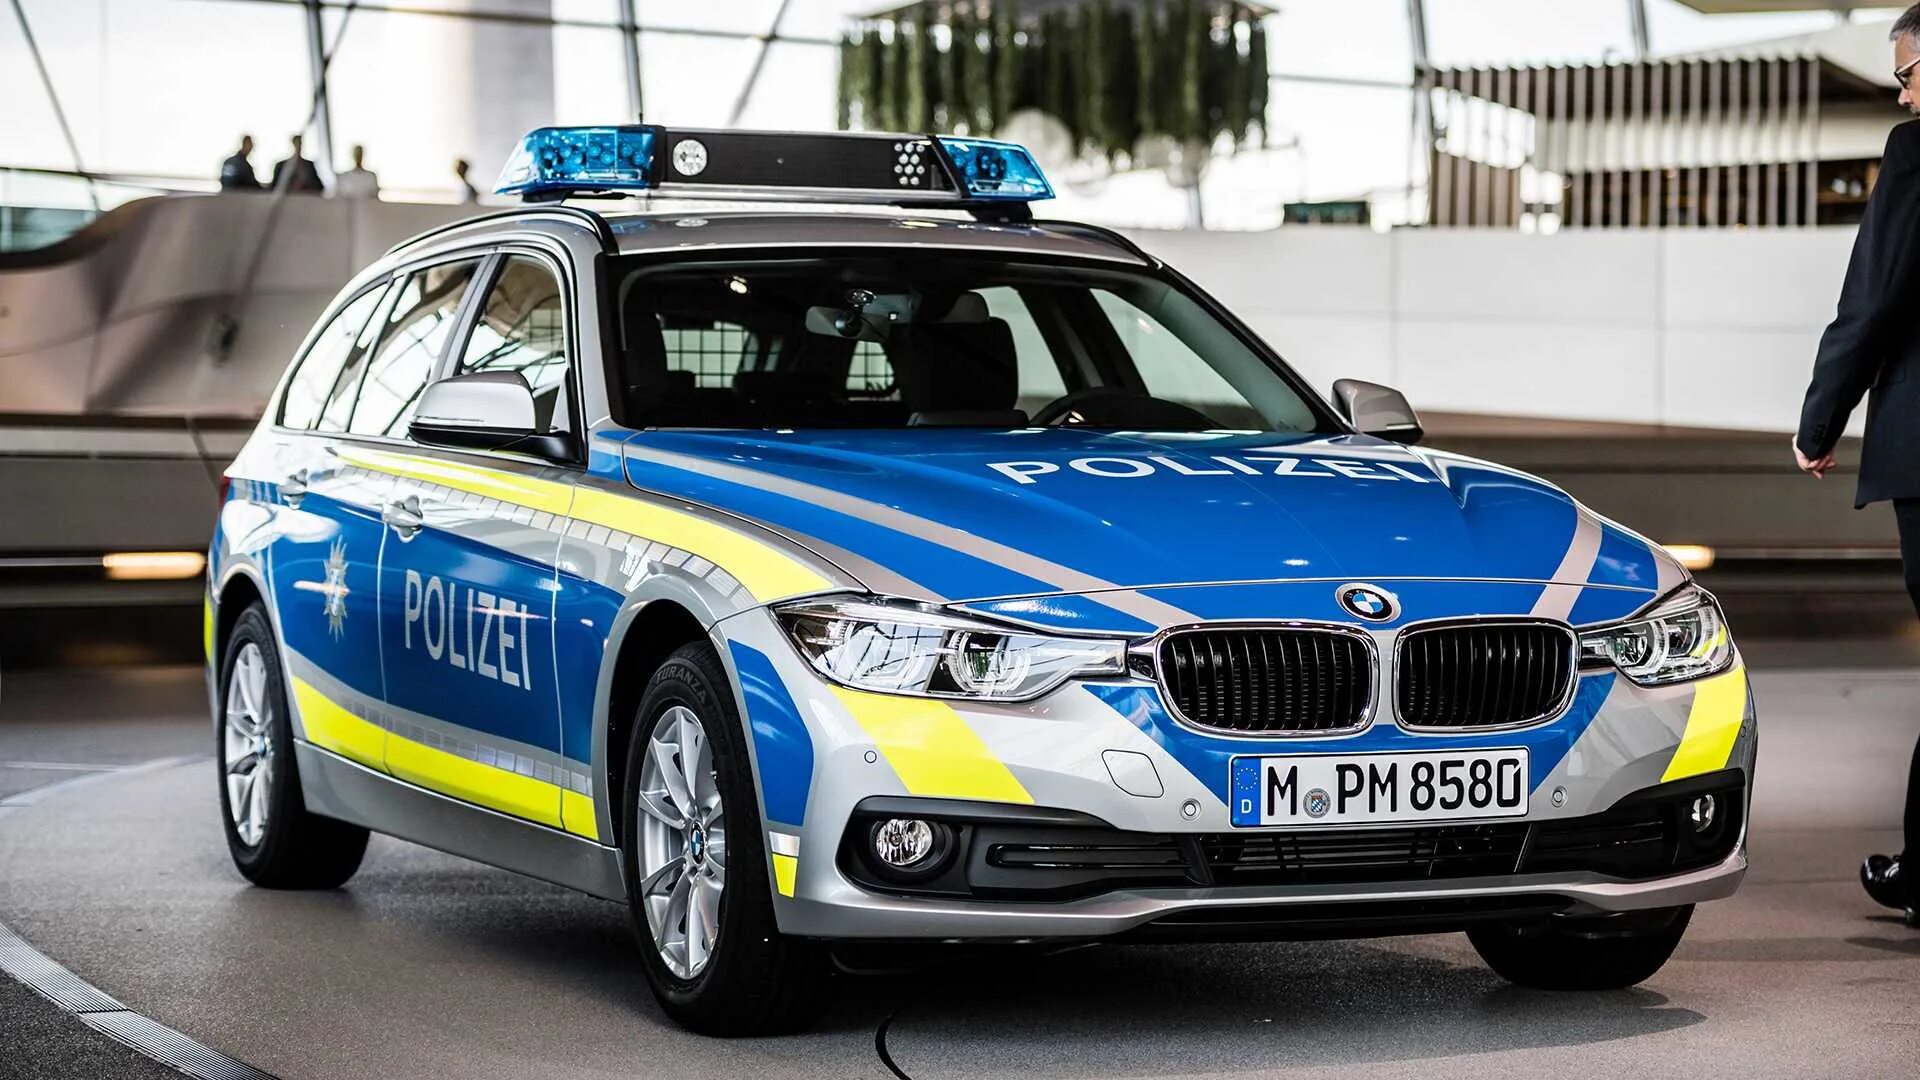 BMW Polizei. BMW m1 Polizei. Полиция Германии БМВ. BMW 545i Polizei.